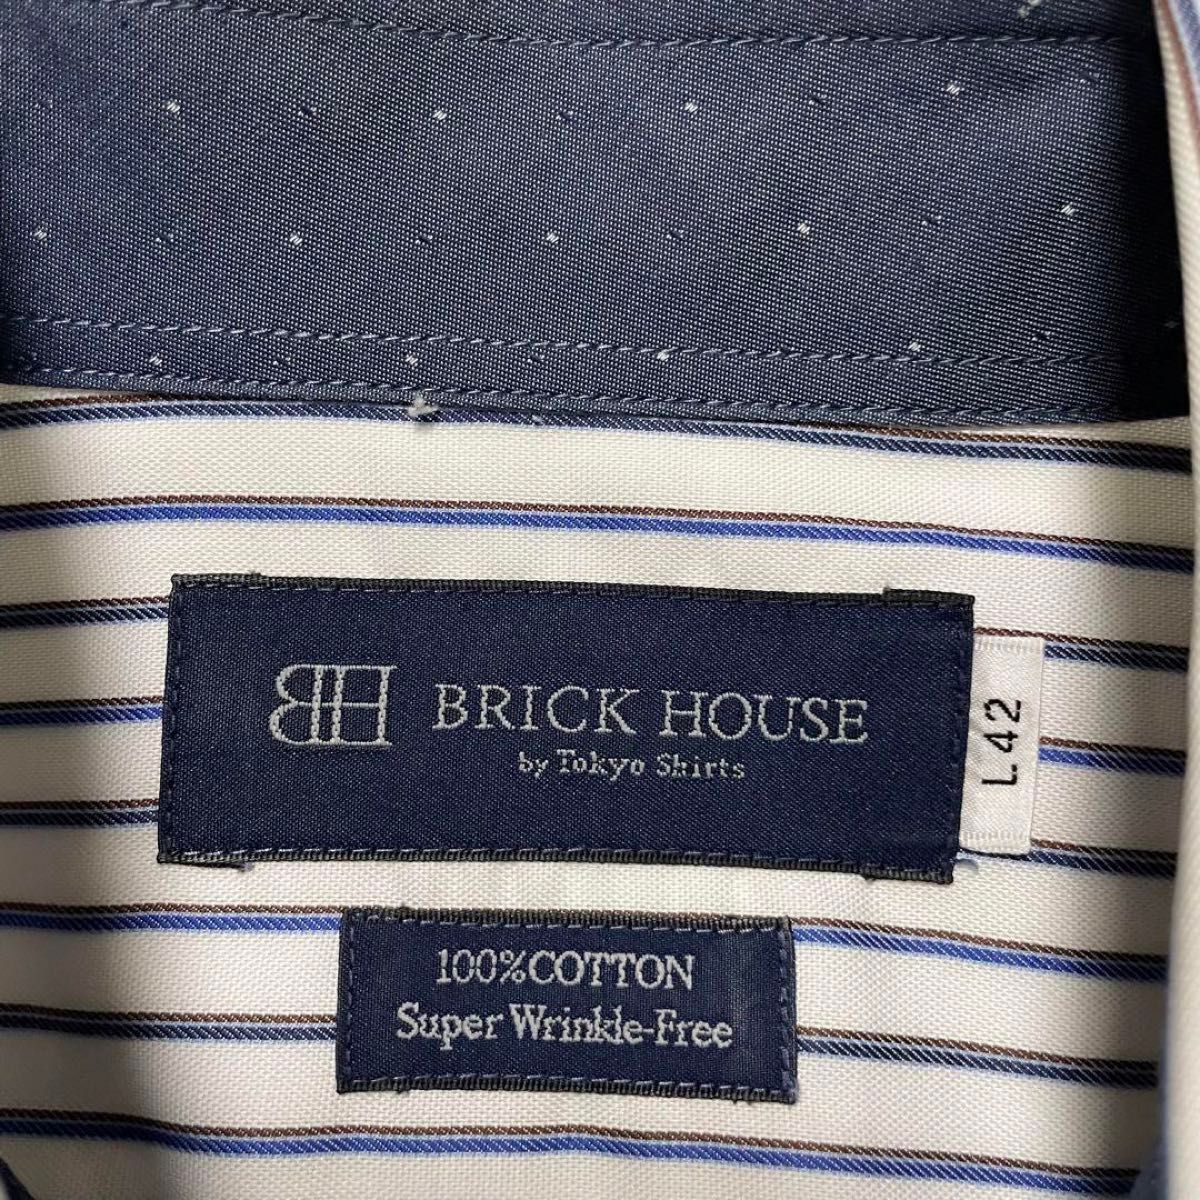 【BRICK HOUSE】ボタンダウン ストライプ シャツ/コットン 吸汗シャツ  半袖 ワイシャツ スーツ フォーマル ビジネス